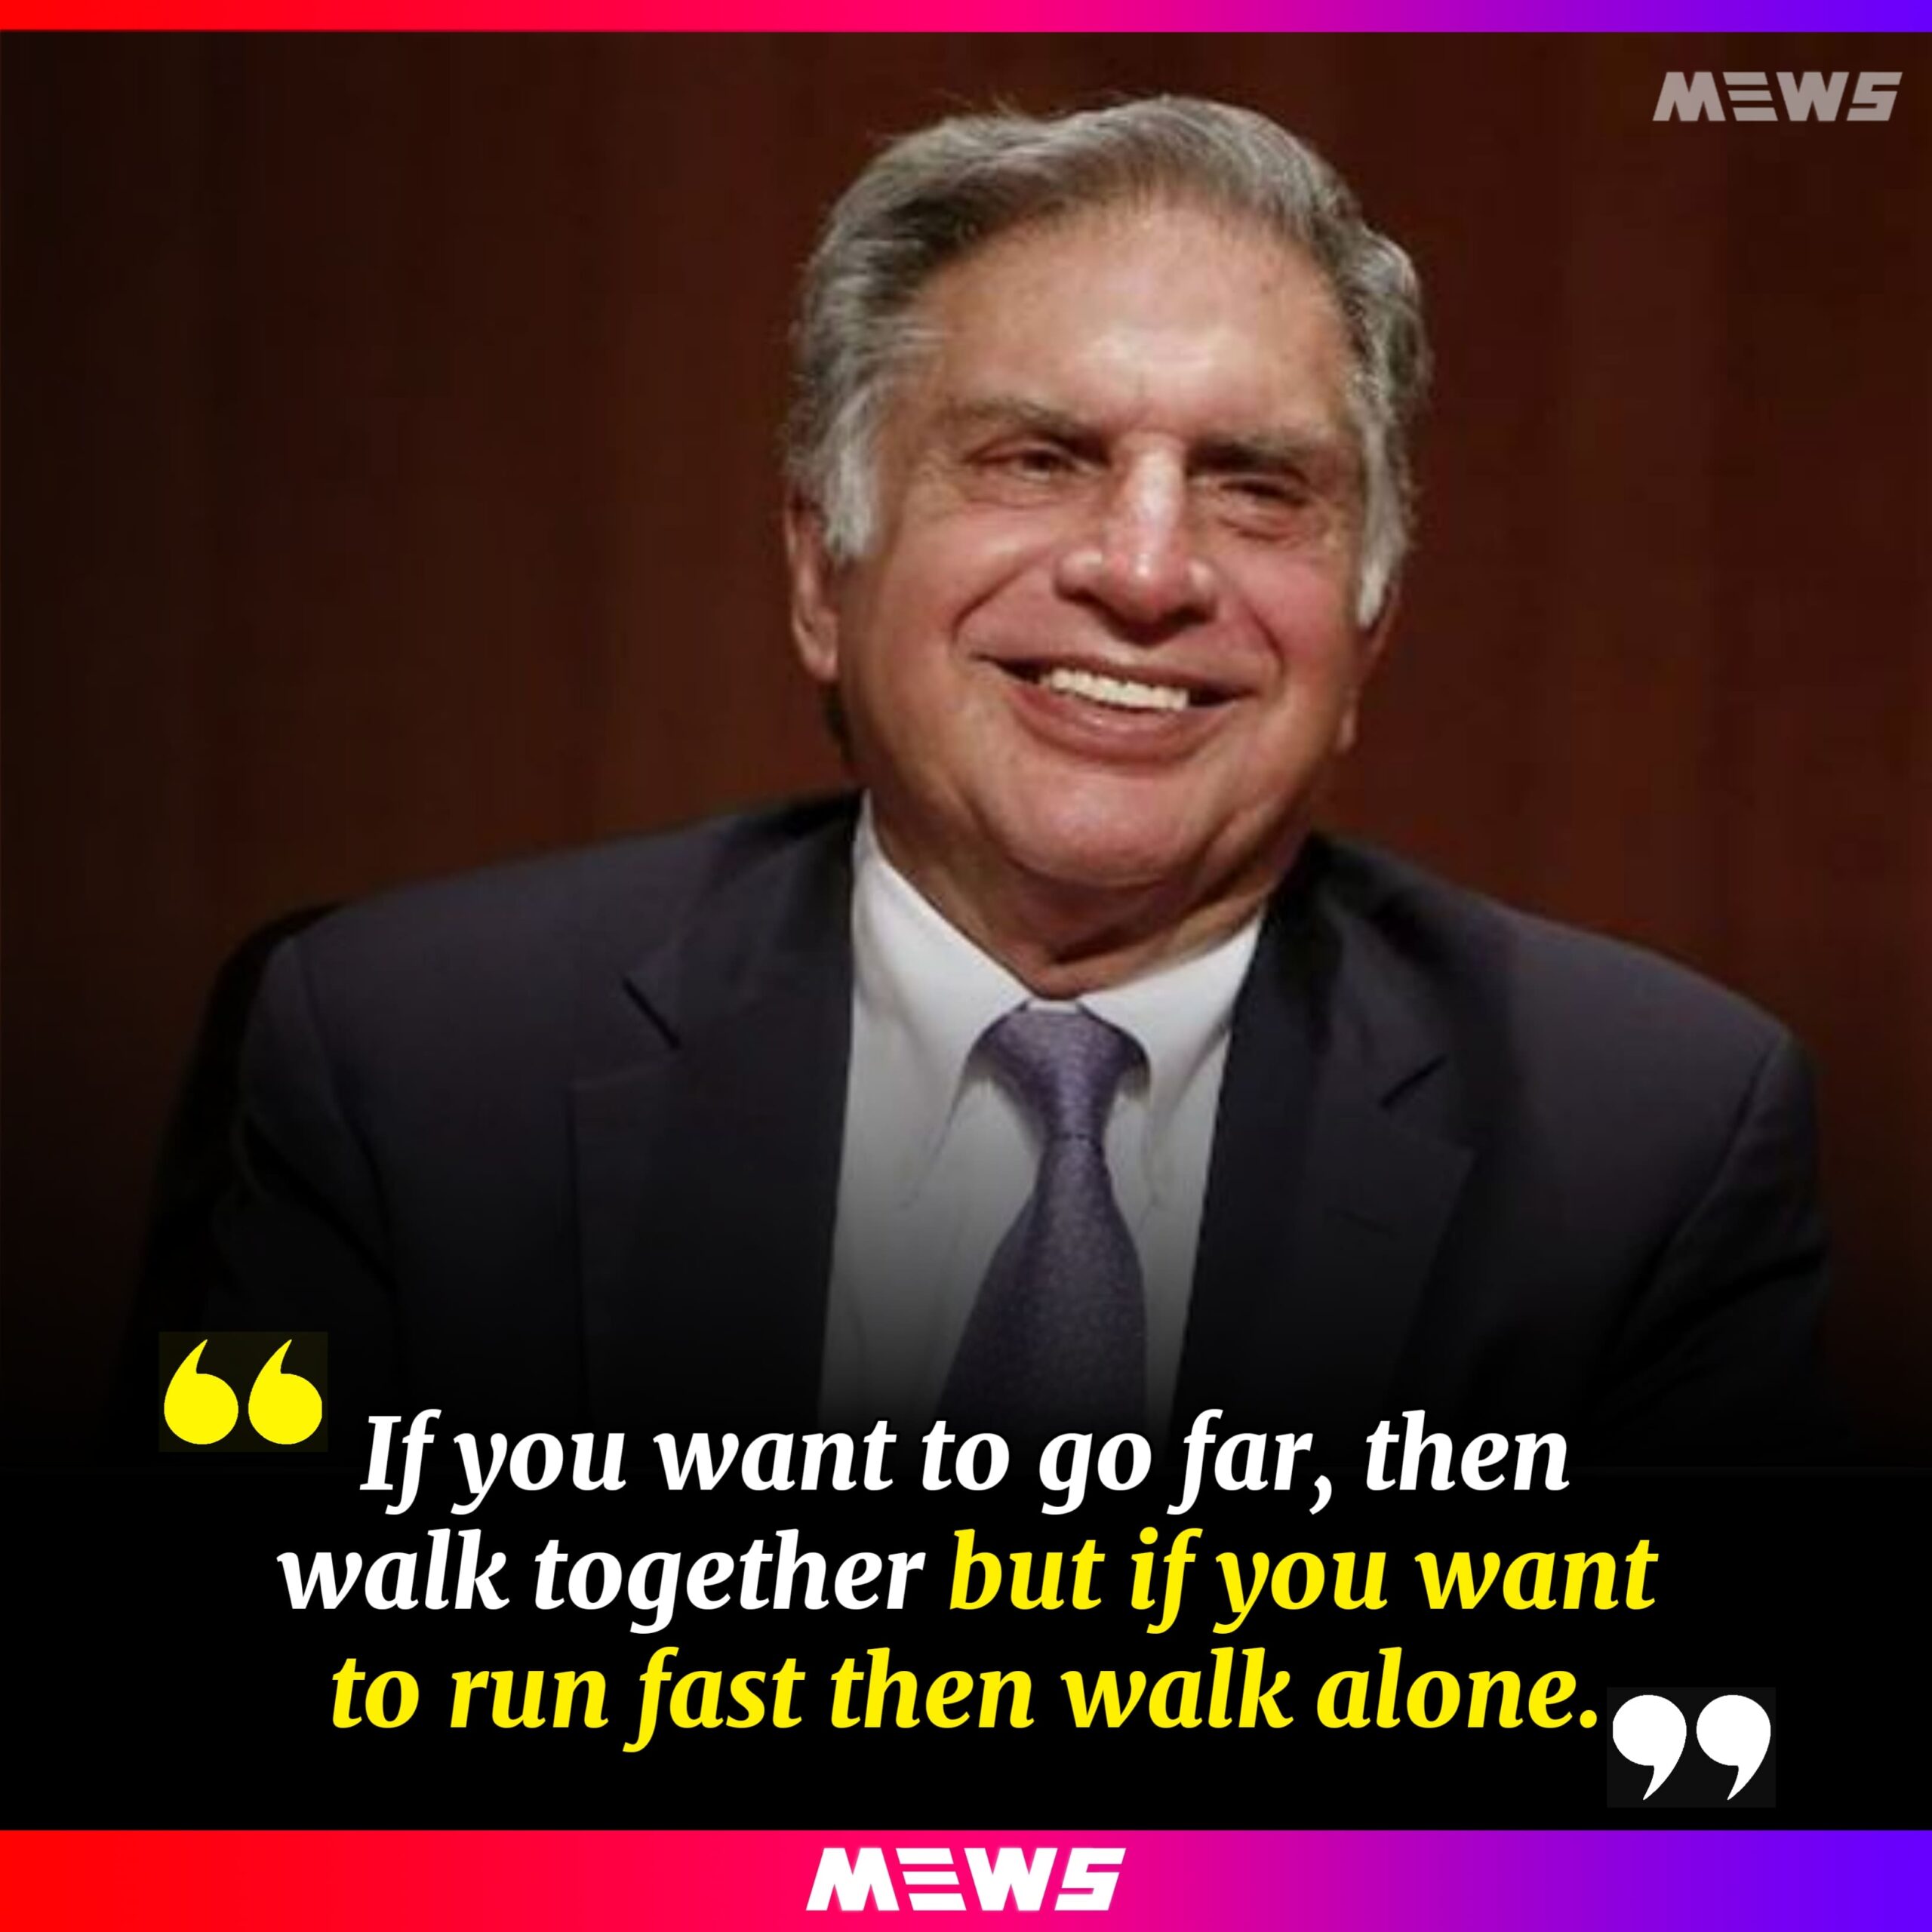 Quote of Ratan Tata